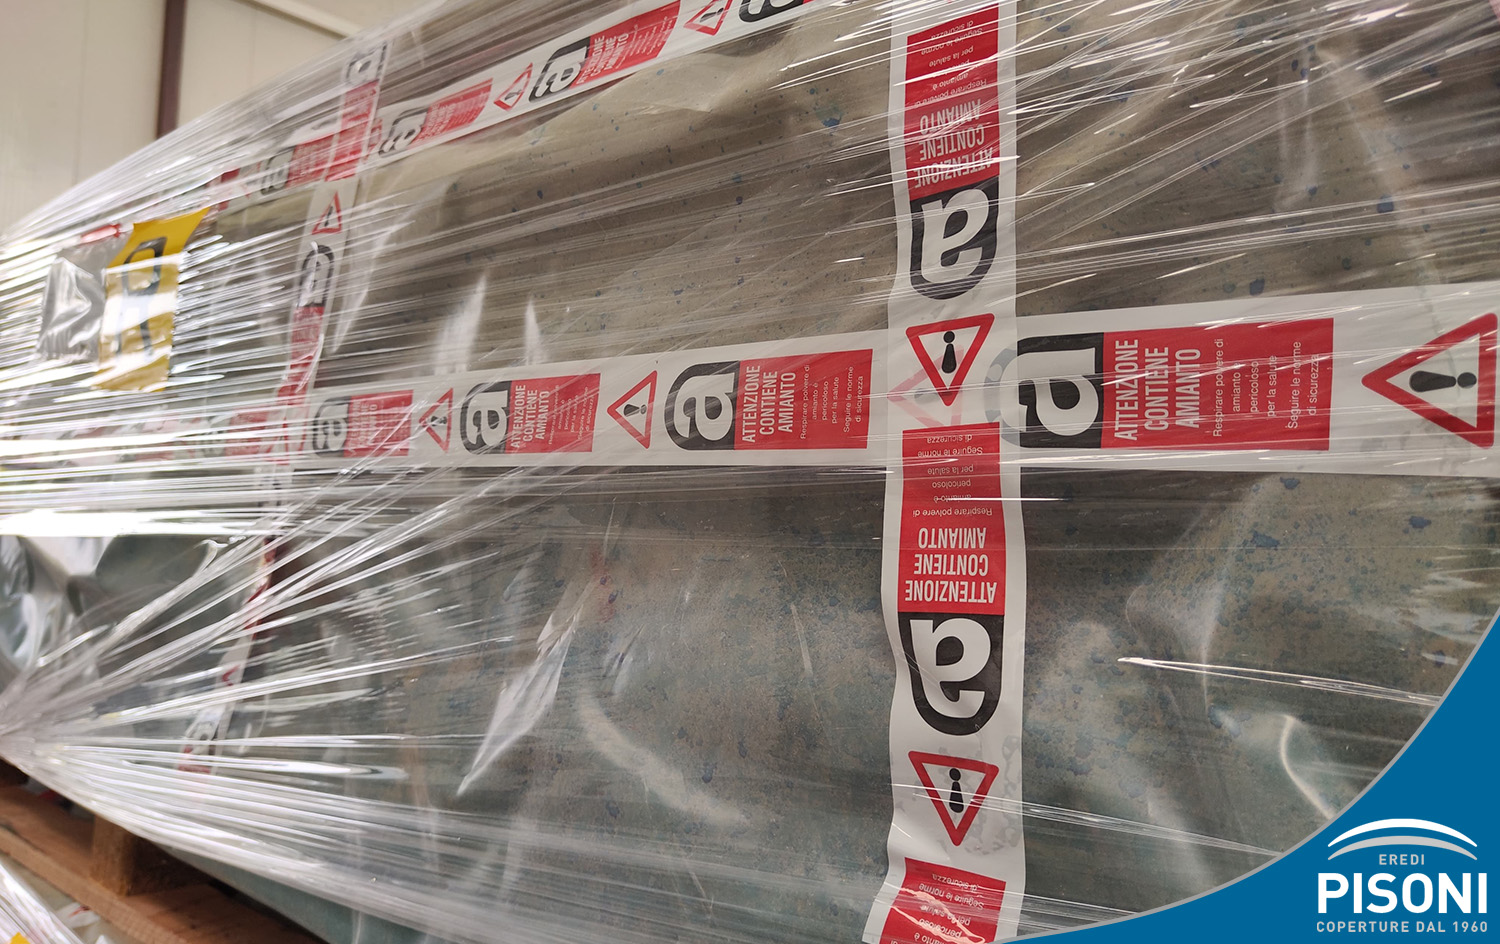 Bancale di materiale presso Eredi Pisoni con etichetta per segnalare la pericolosità dell'amianto